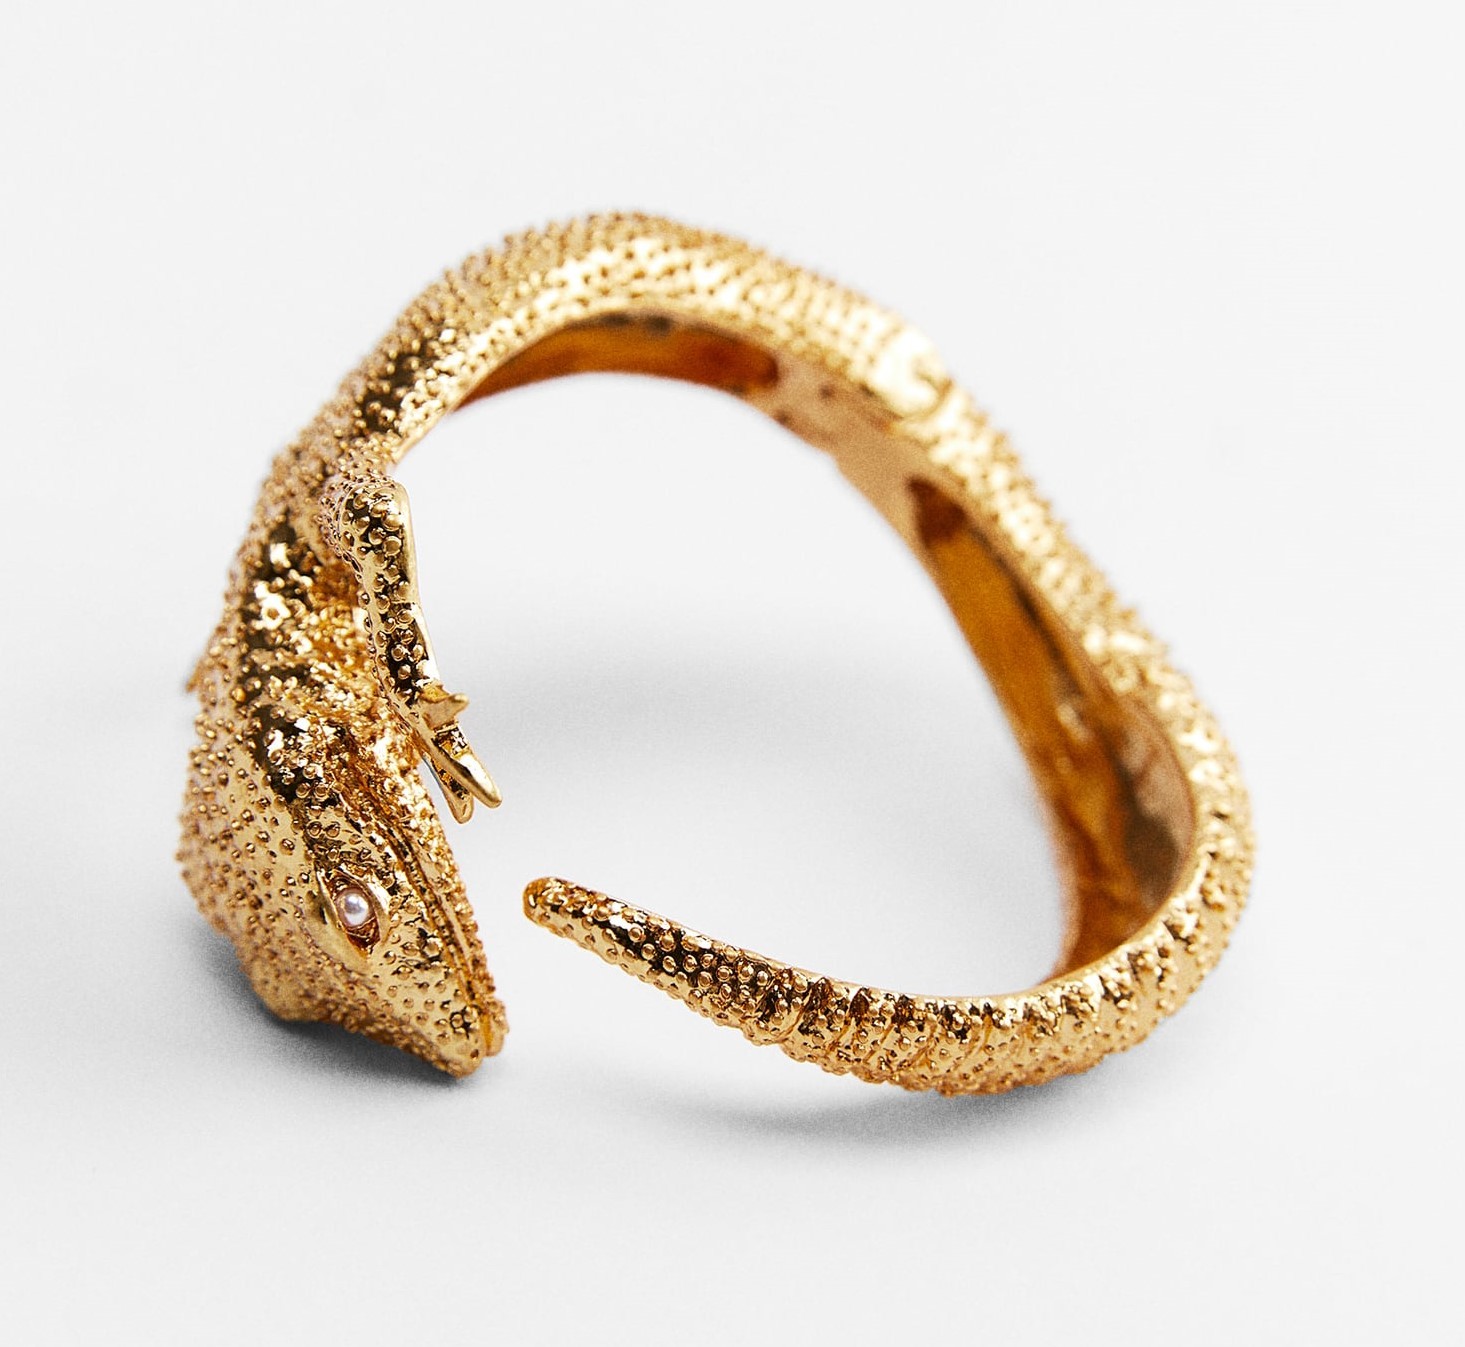 Brazalete dorado en forma de reptil, de Zara.